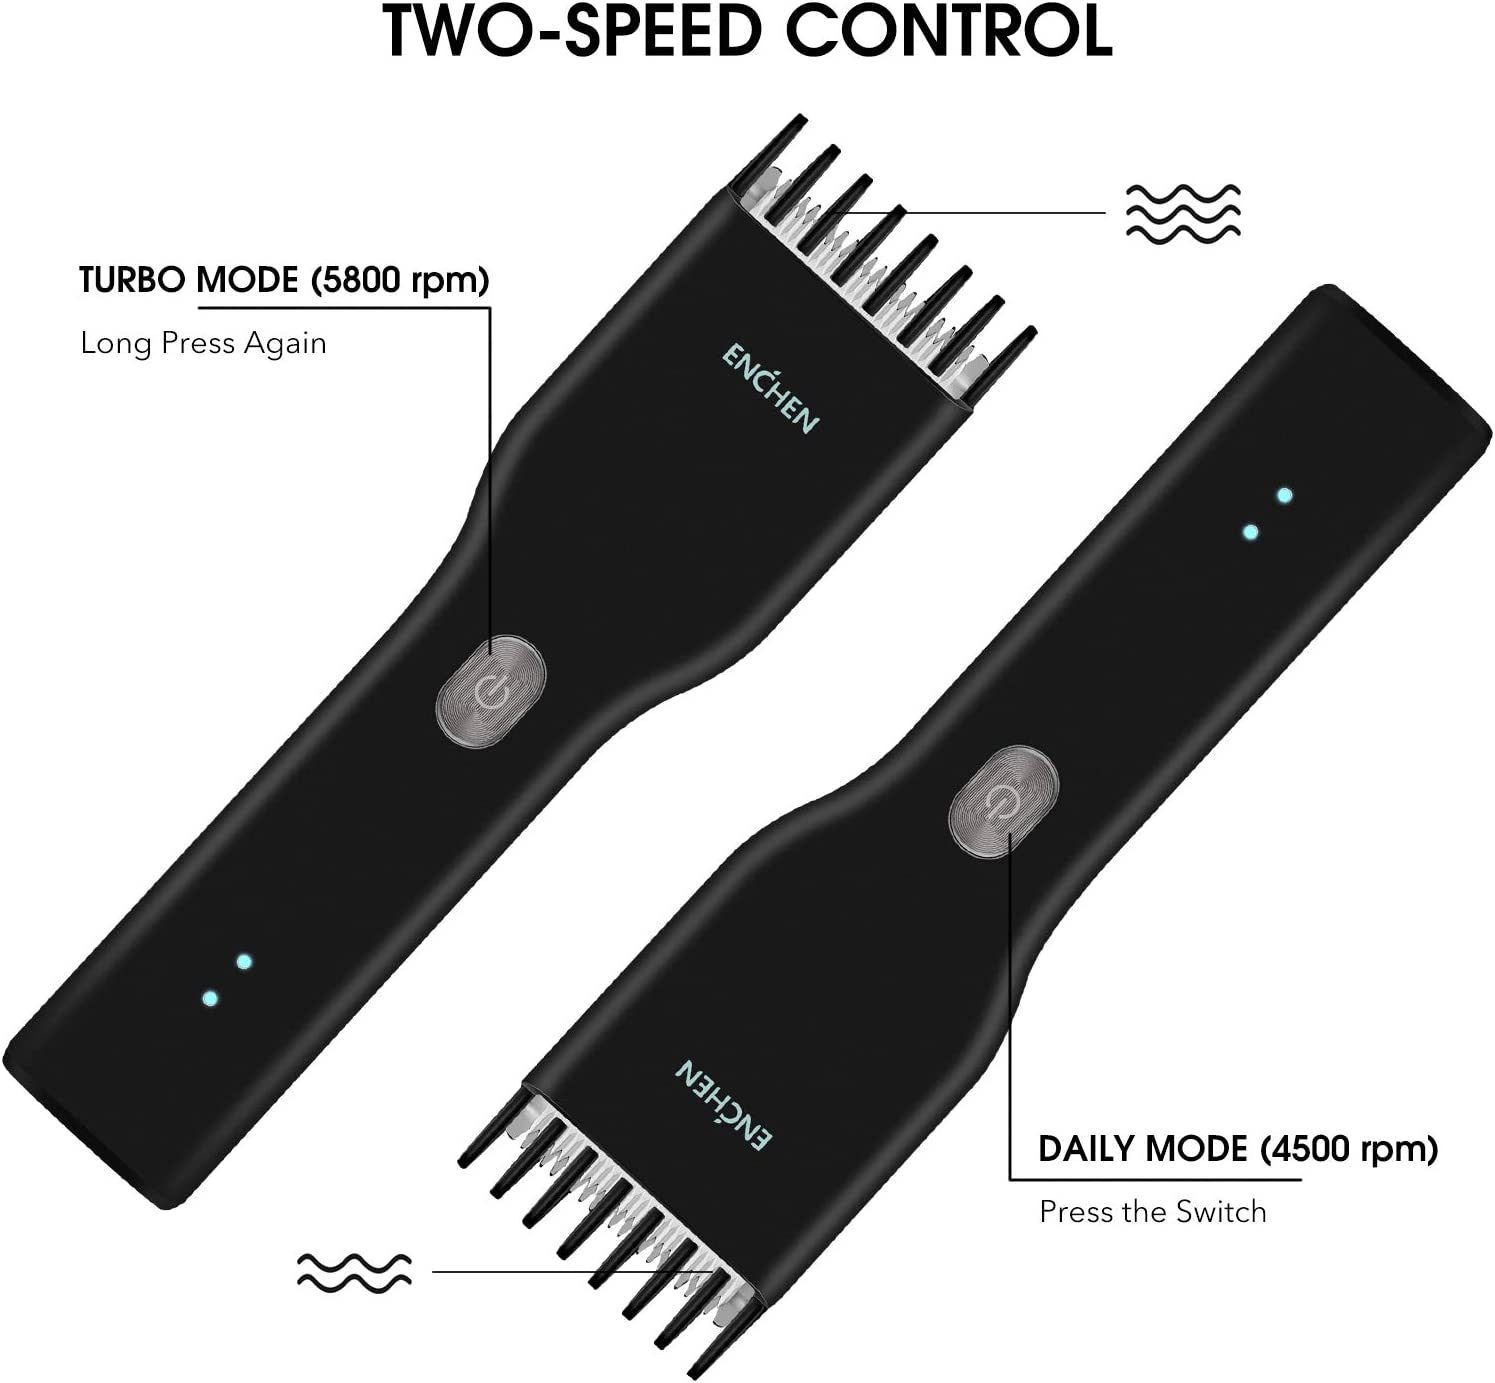 ماكينة قص الشعر الكهربائية اللاسلكية متعددة الوظائف Enchen Boost - أسود